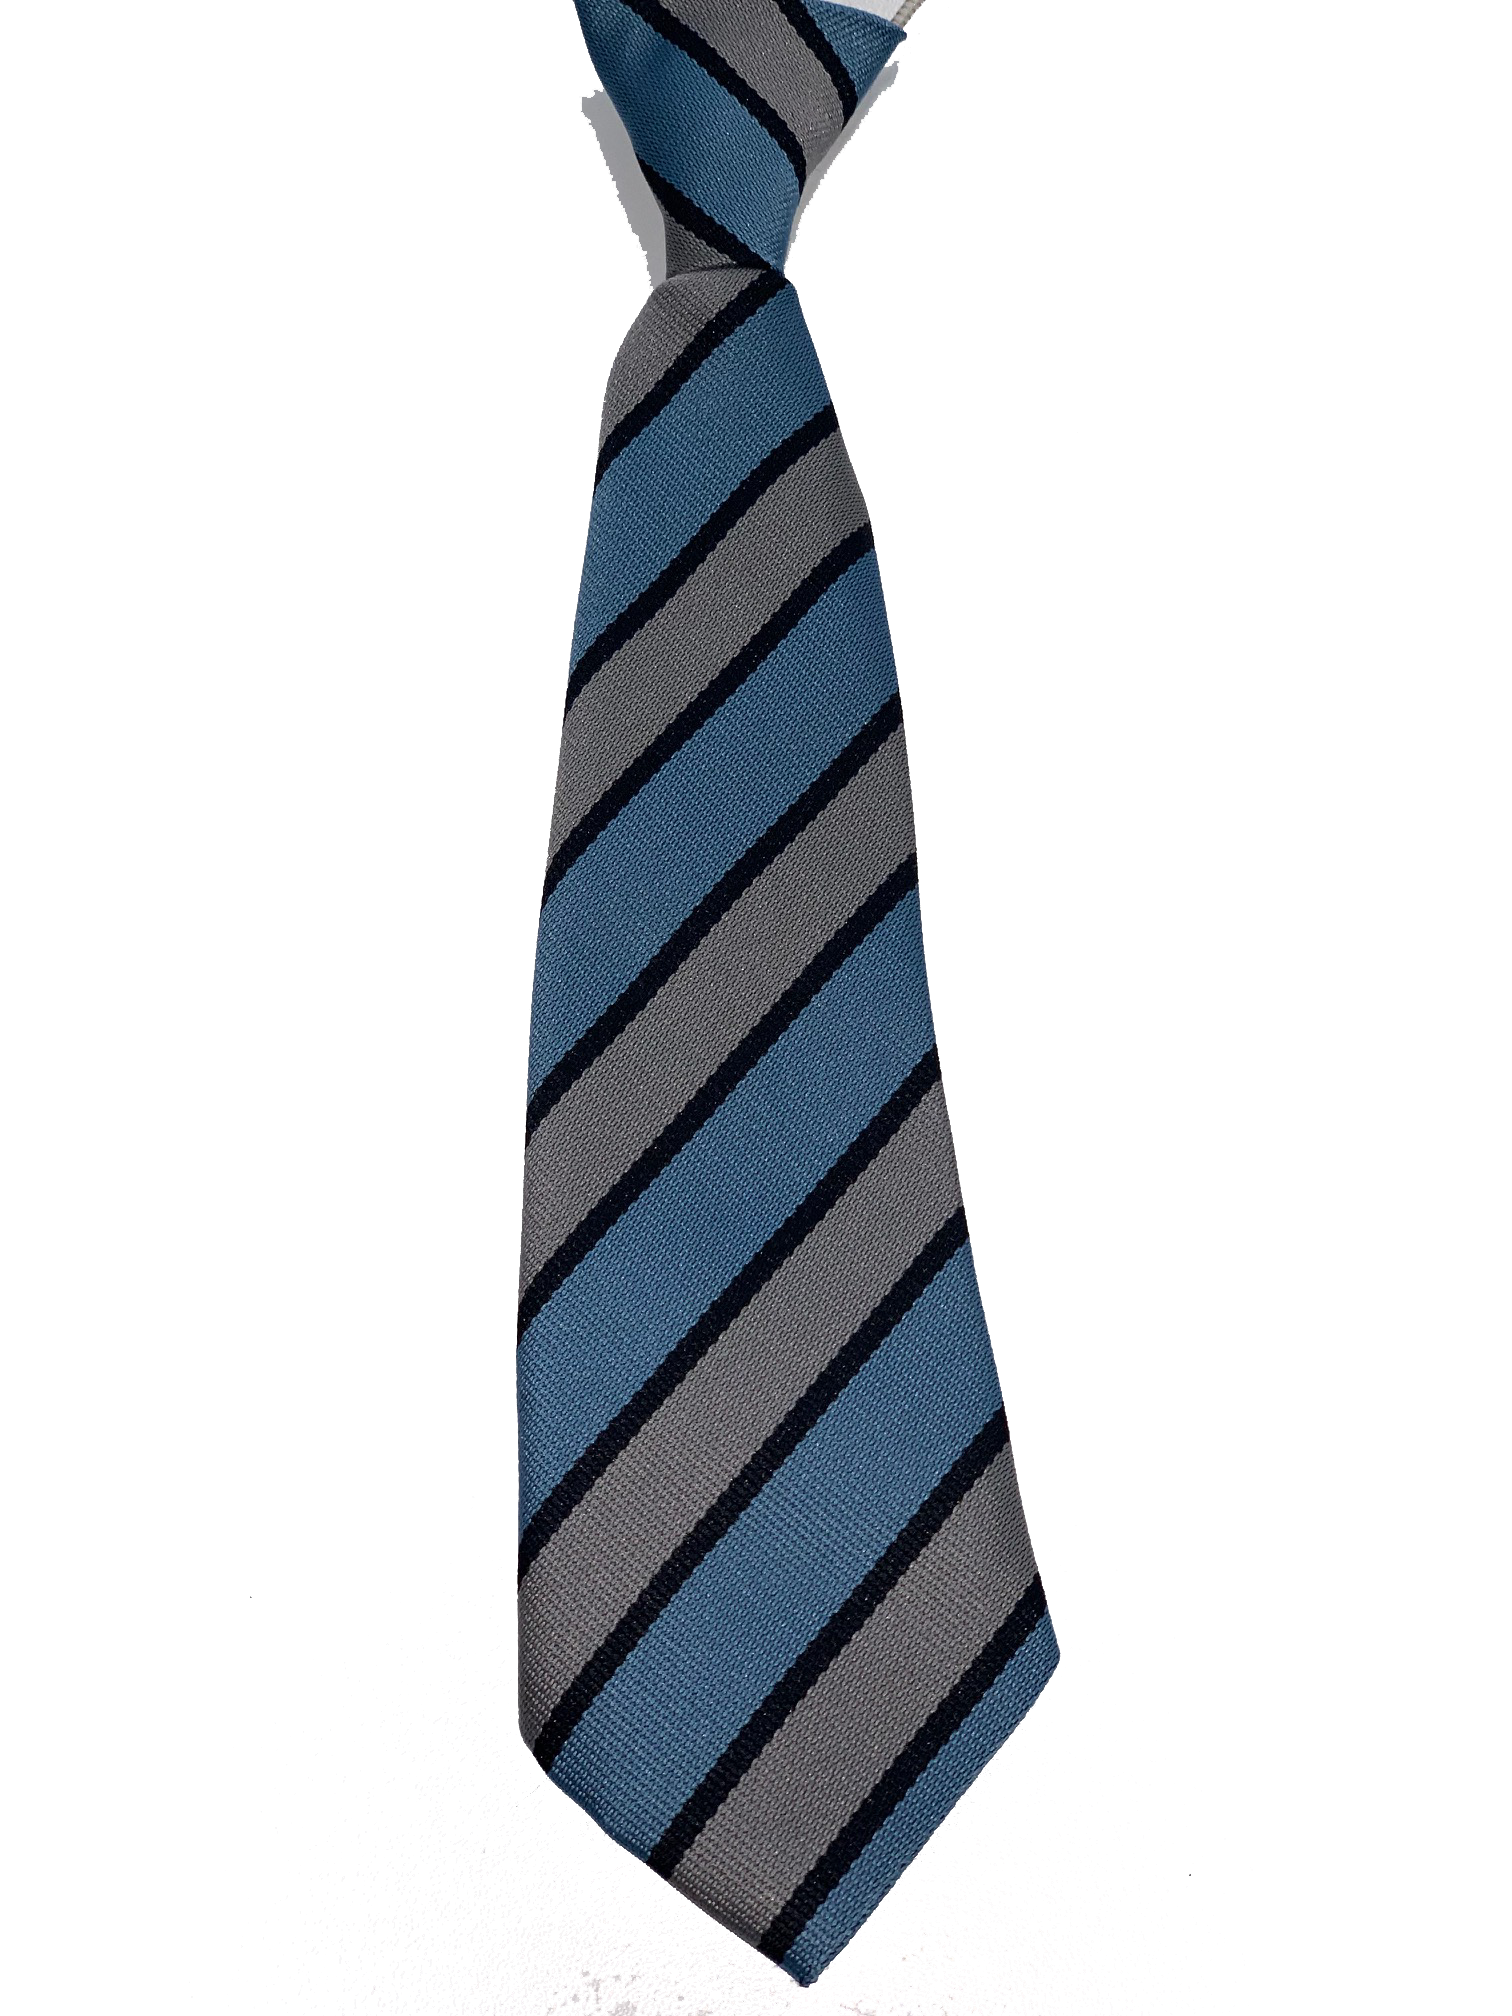 St Luke's Tie (Standard or Elastic)